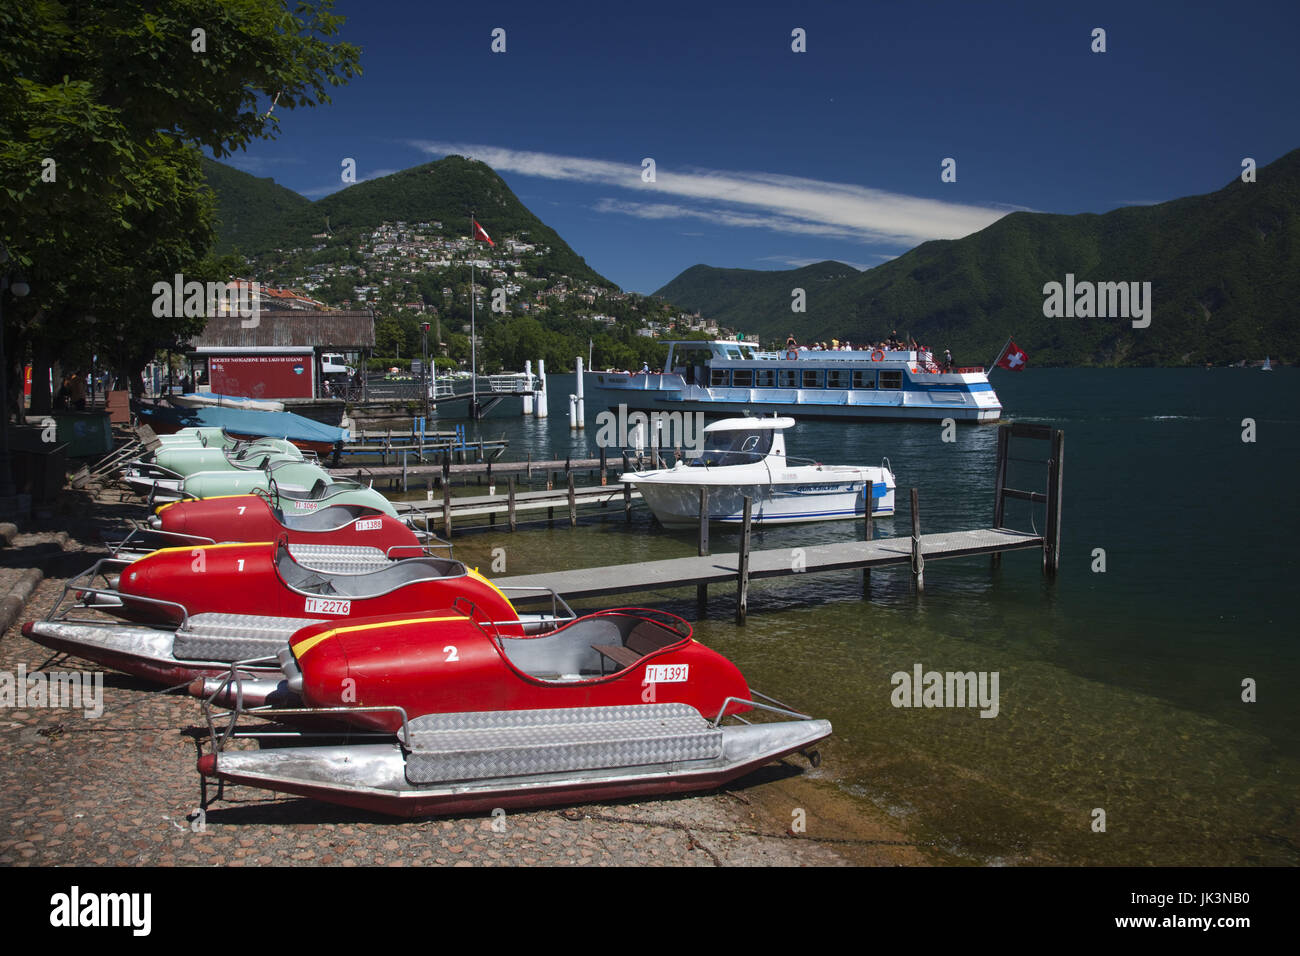 Switzerland, Ticino, Lake Lugano, Lugano, lakefront with paddleboats Stock Photo